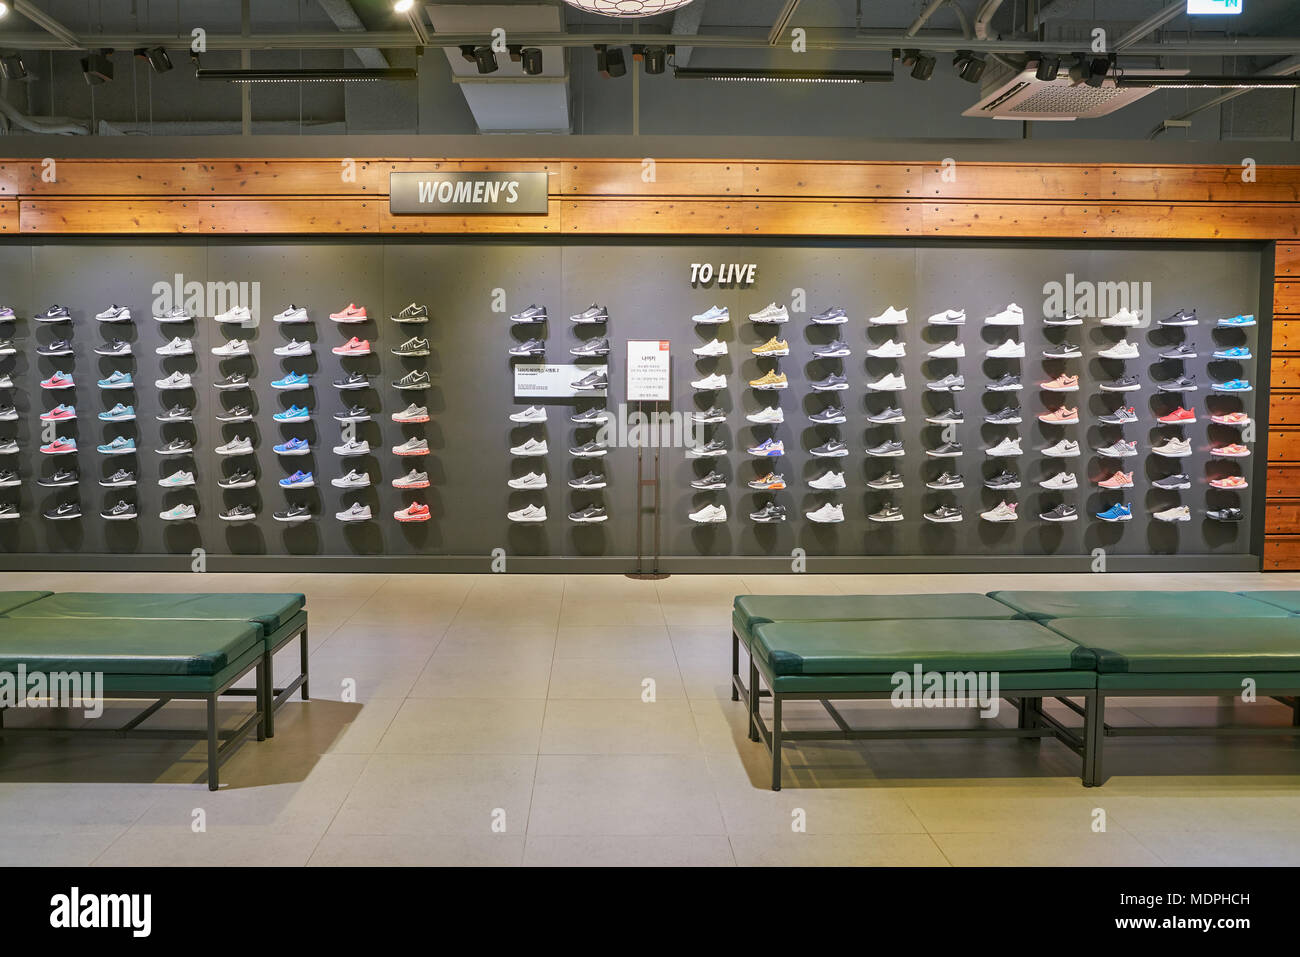 Nike Shoe Immagini e Fotos Stock - Alamy